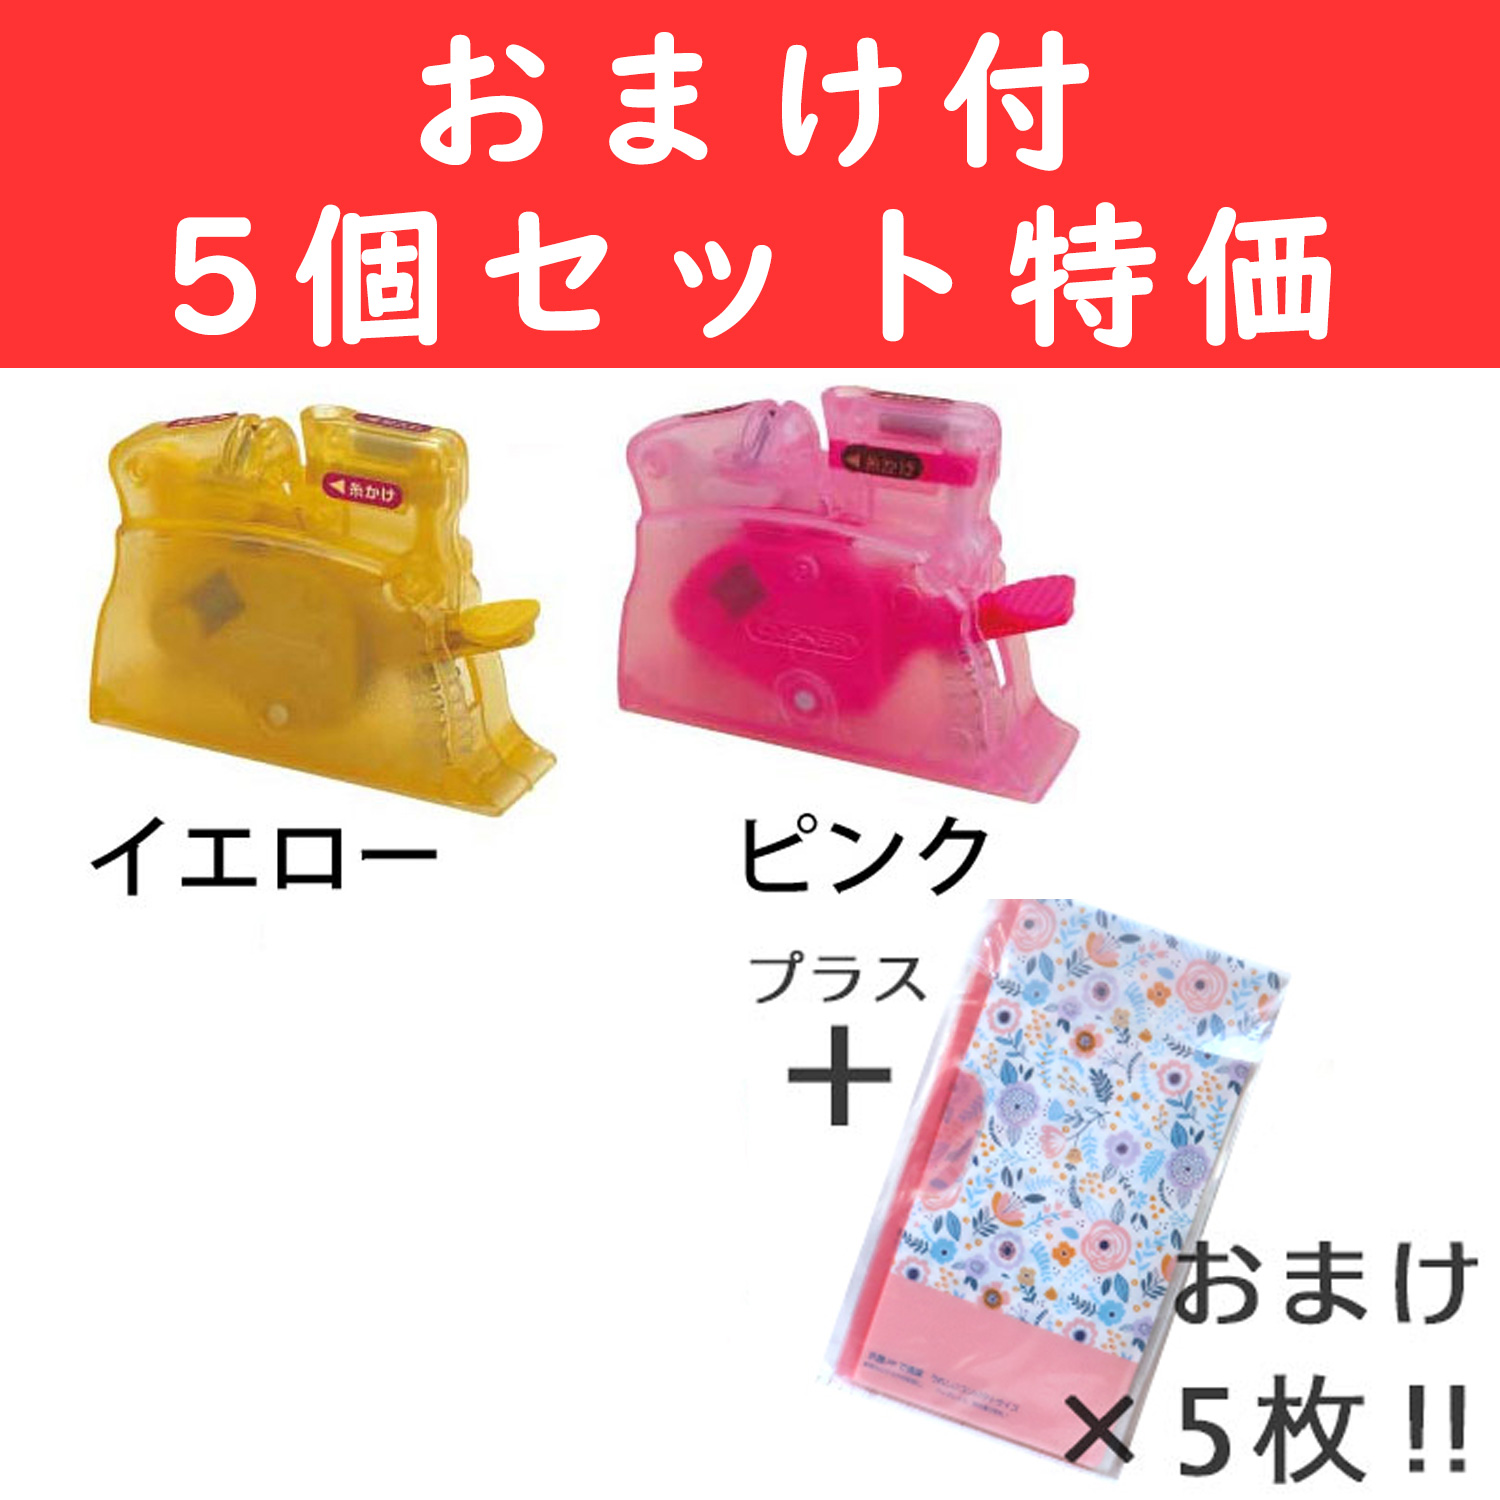 ★おまけ付き★特価 CLOVER デスクスレダー 5個 + マスクケース5枚付き! (セット)